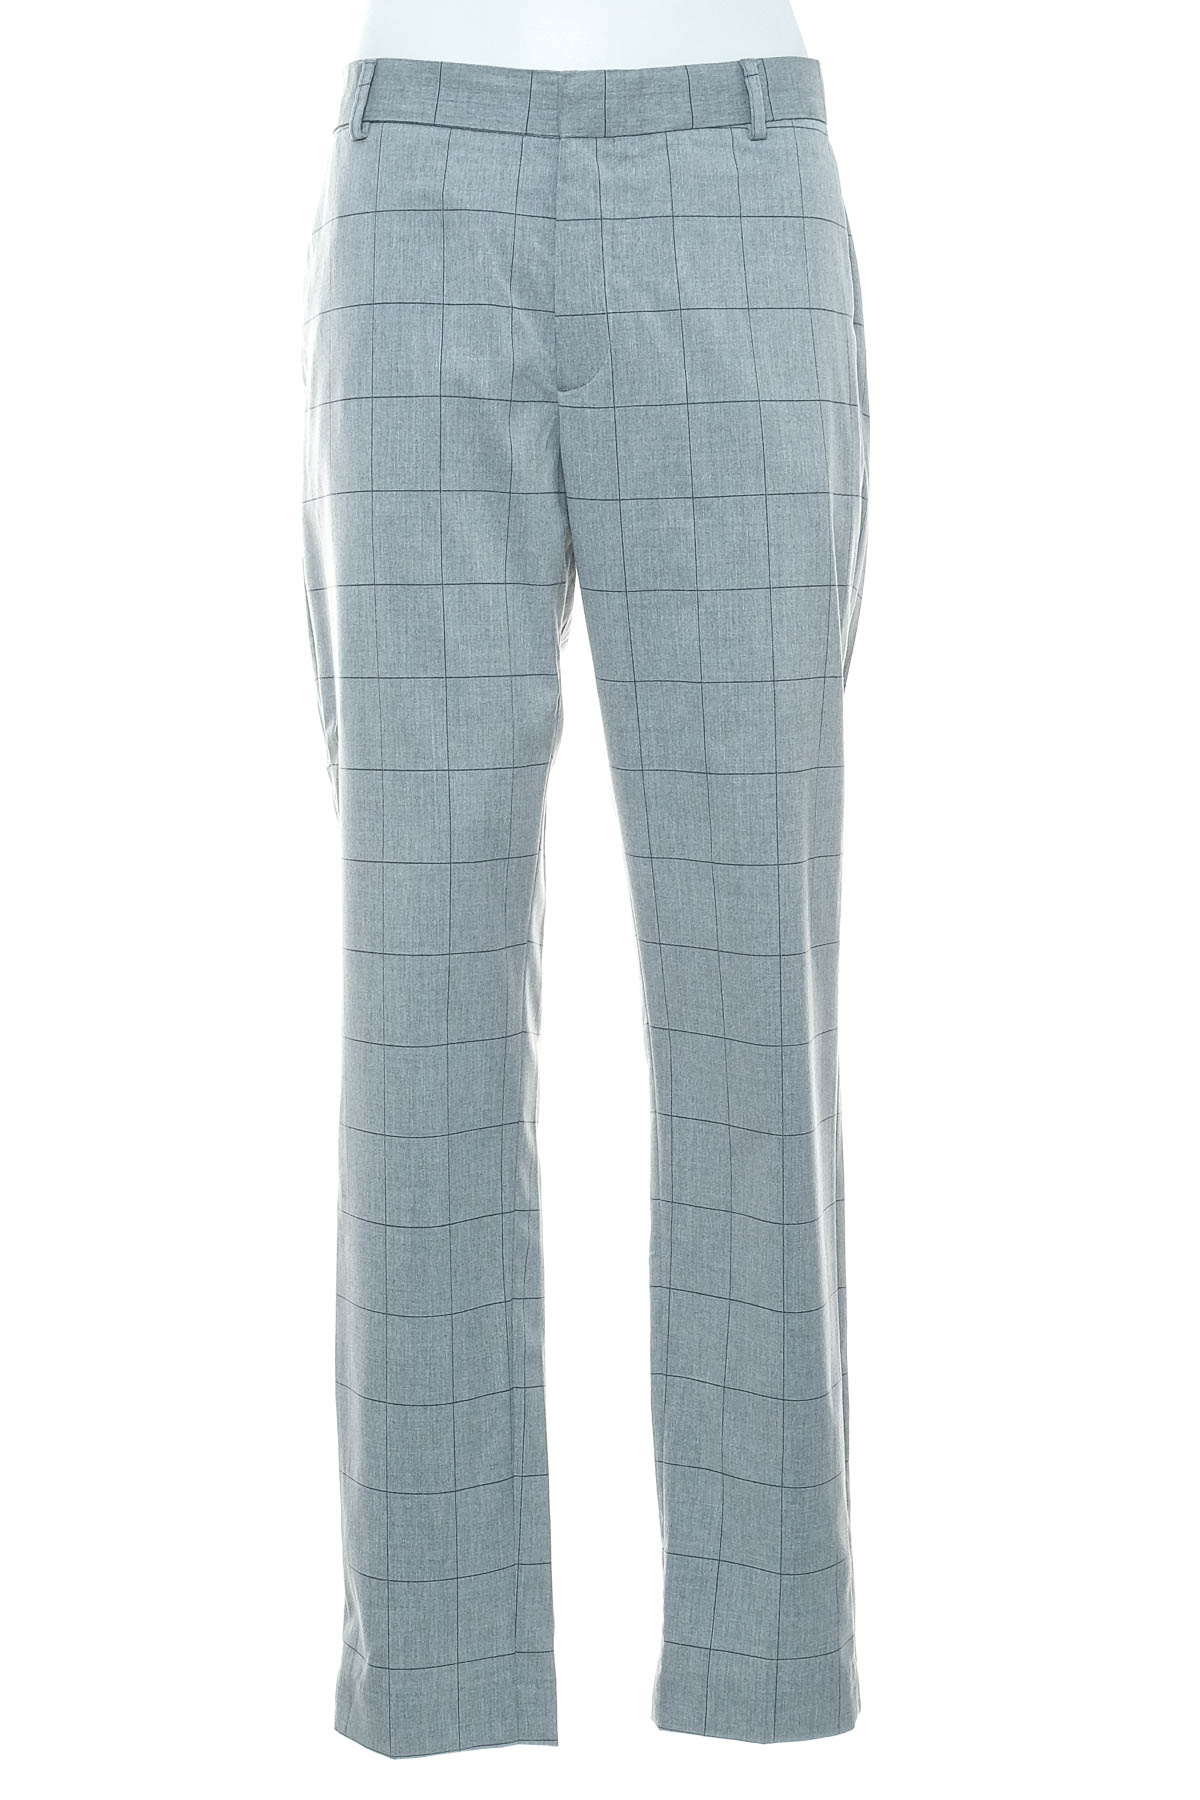 Men's trousers - H&M - 0